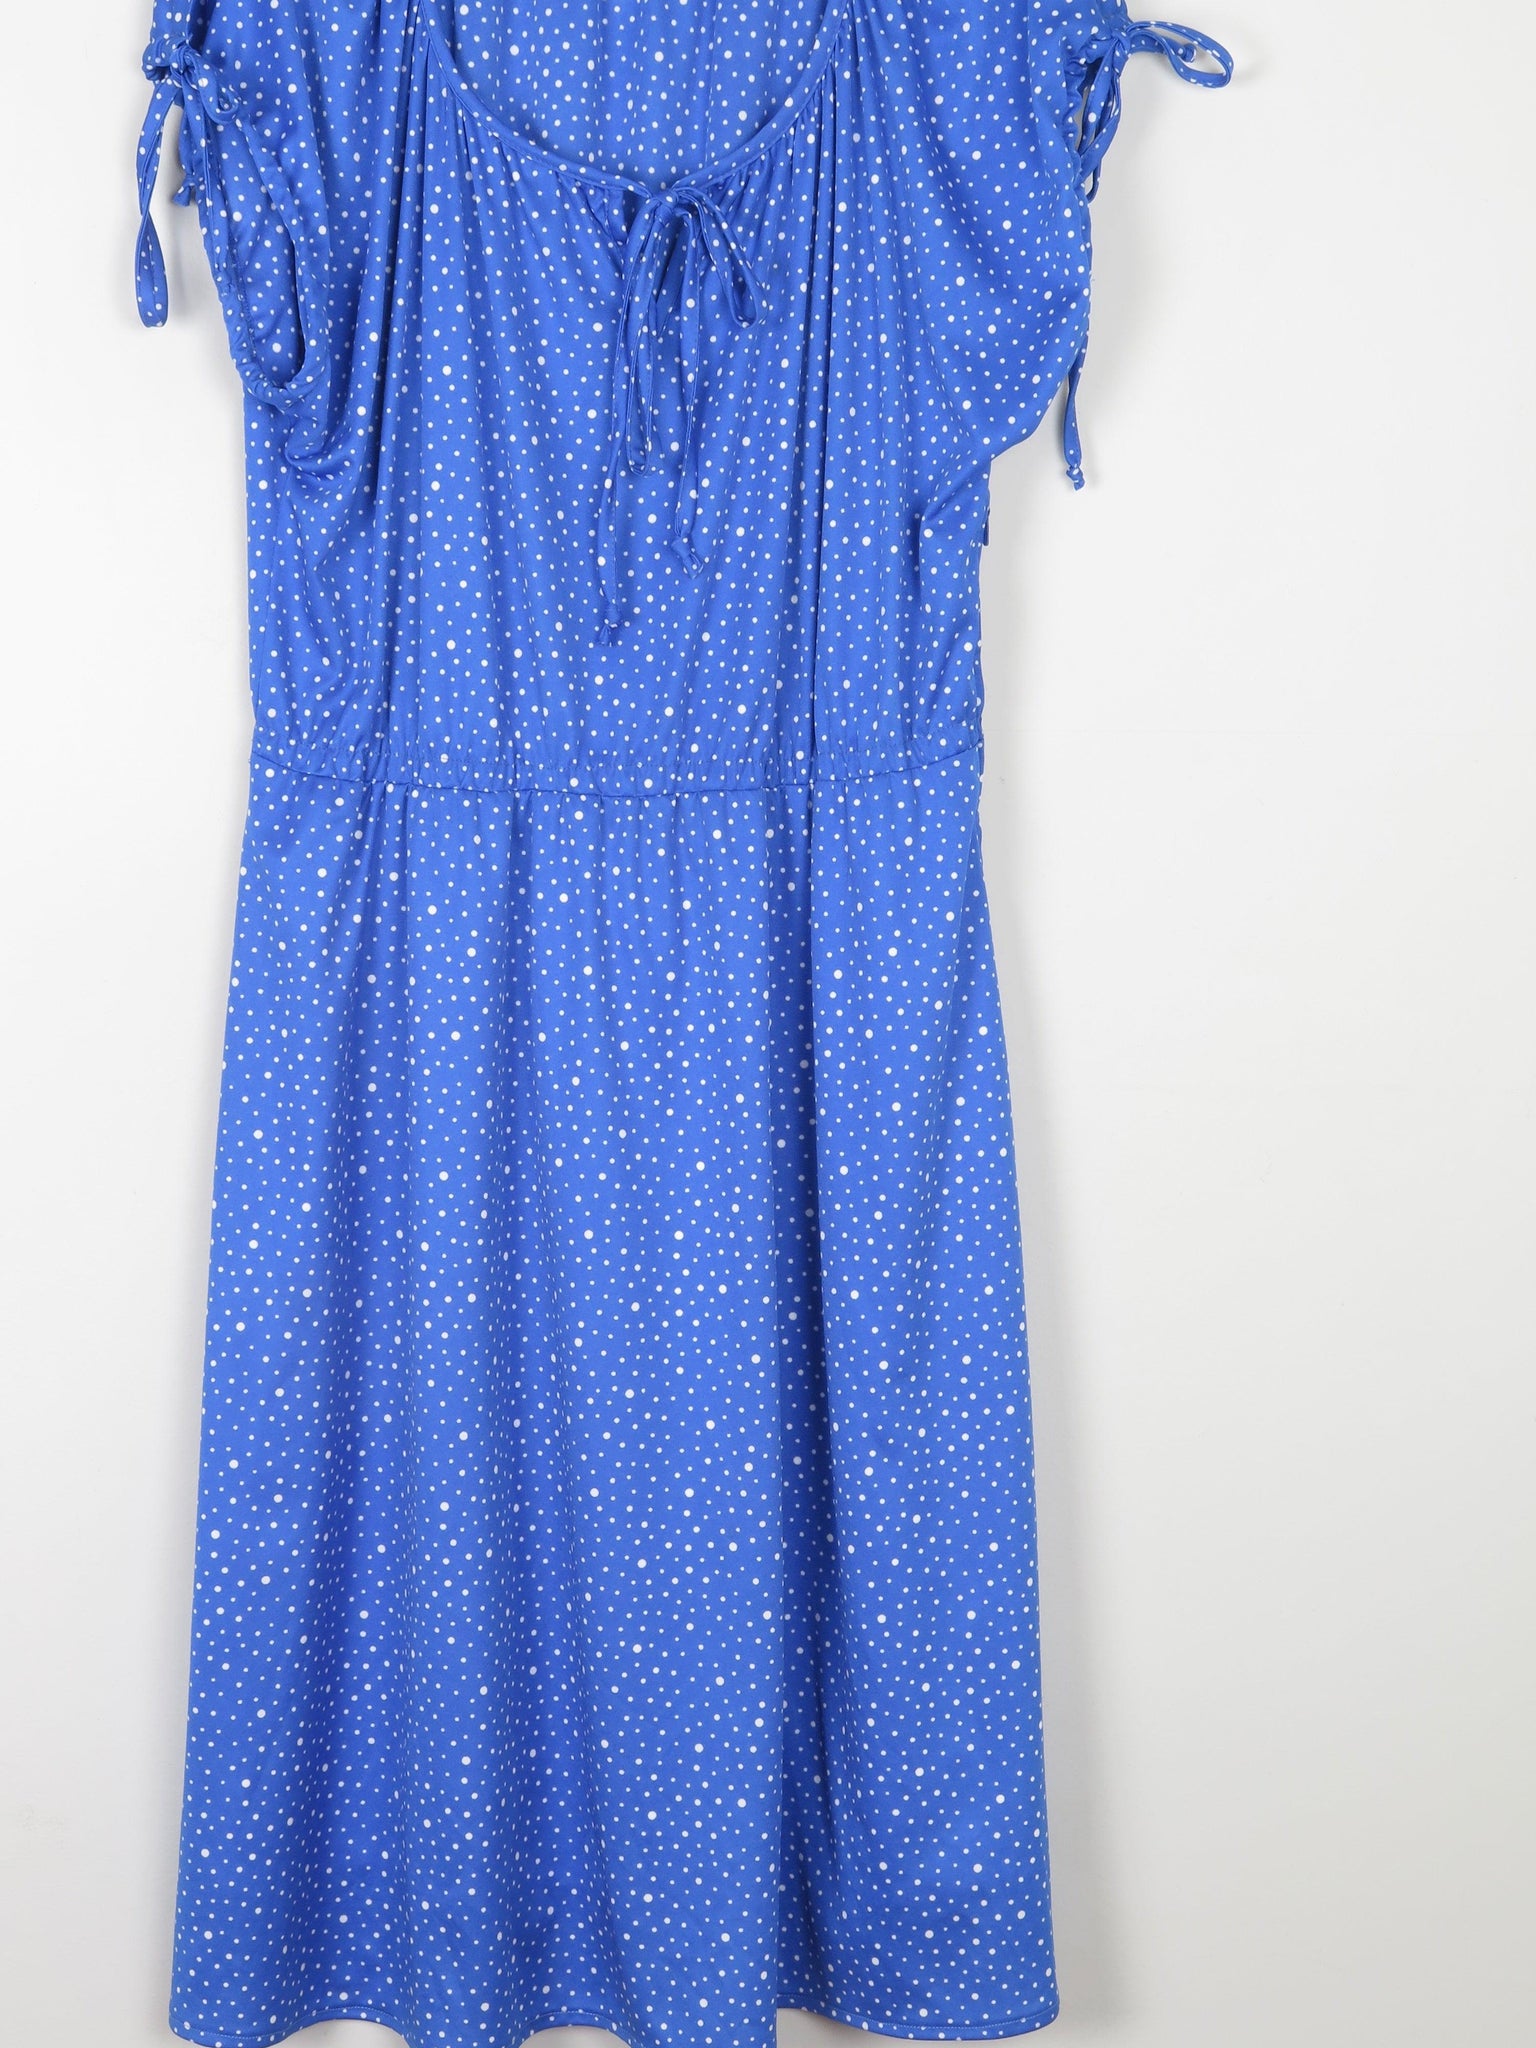 Cobalt Blue Polka Dot Vintage Dress L/XL - The Harlequin